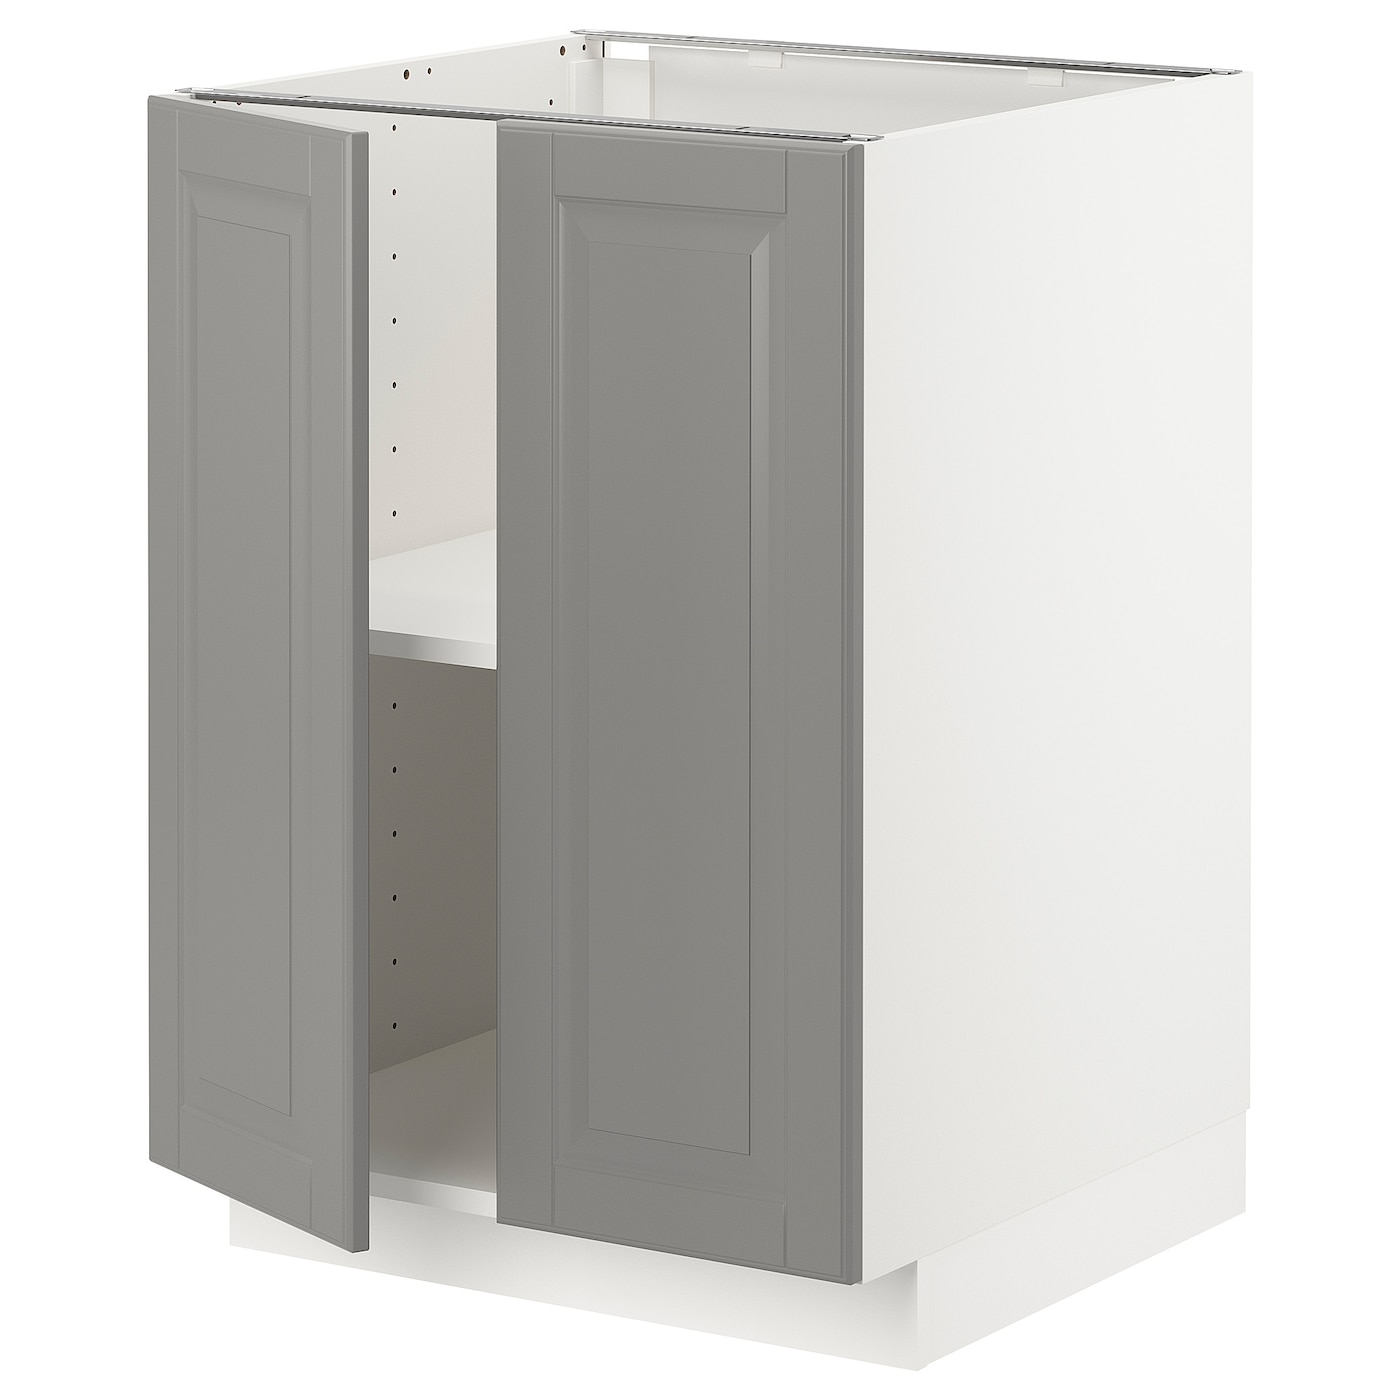 Напольный шкаф - IKEA METOD, 88x62x60см, белый/серый, МЕТОД ИКЕА